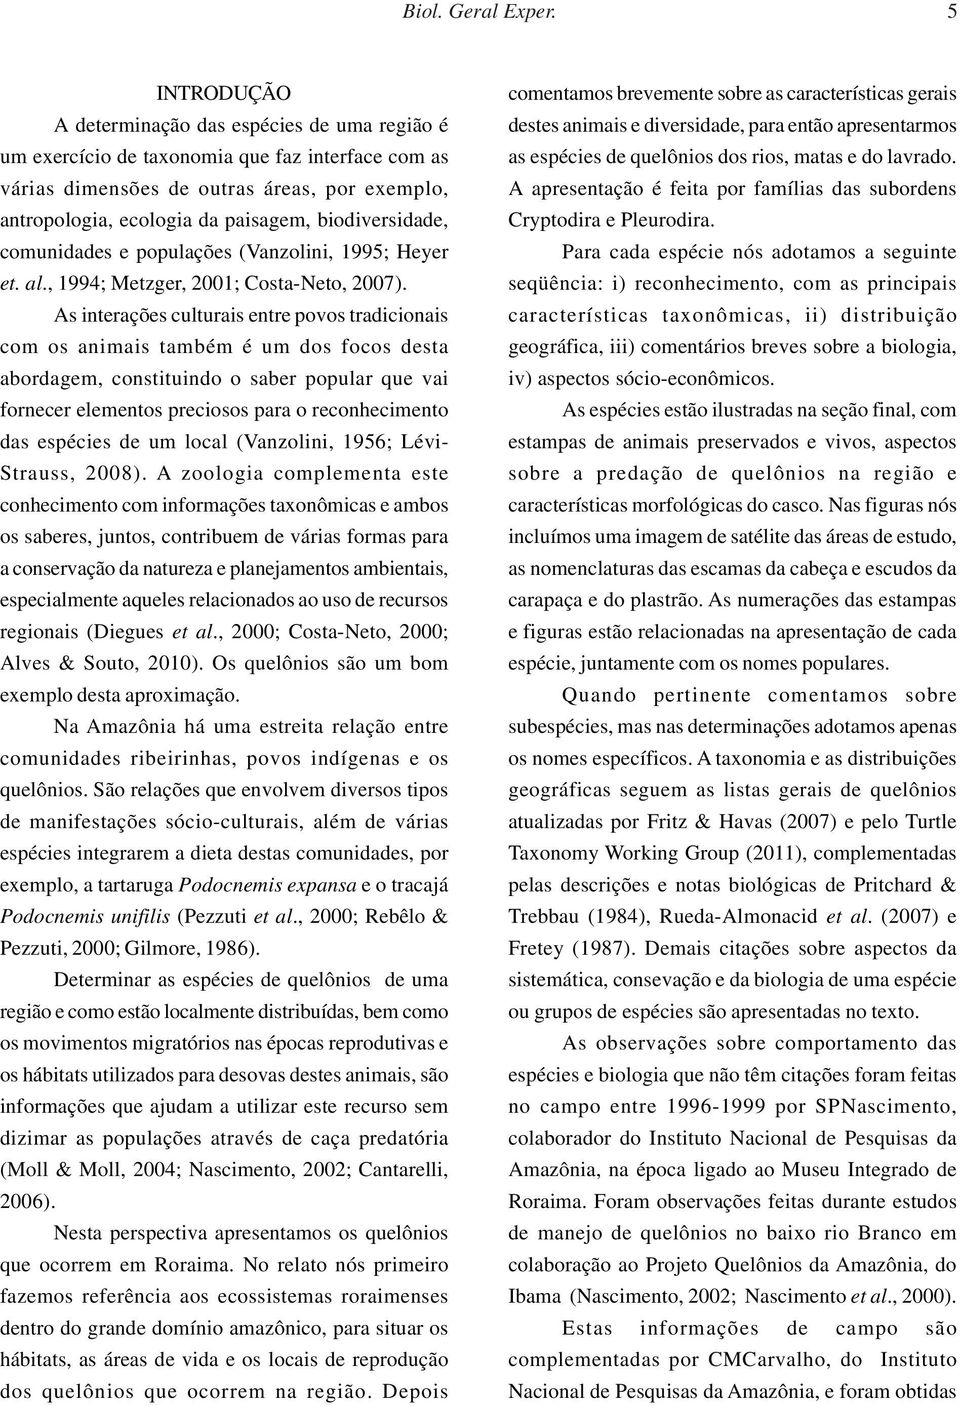 biodiversidade, comunidades e populações (Vanzolini, 1995; Heyer et. al., 1994; Metzger, 2001; Costa-Neto, 2007).